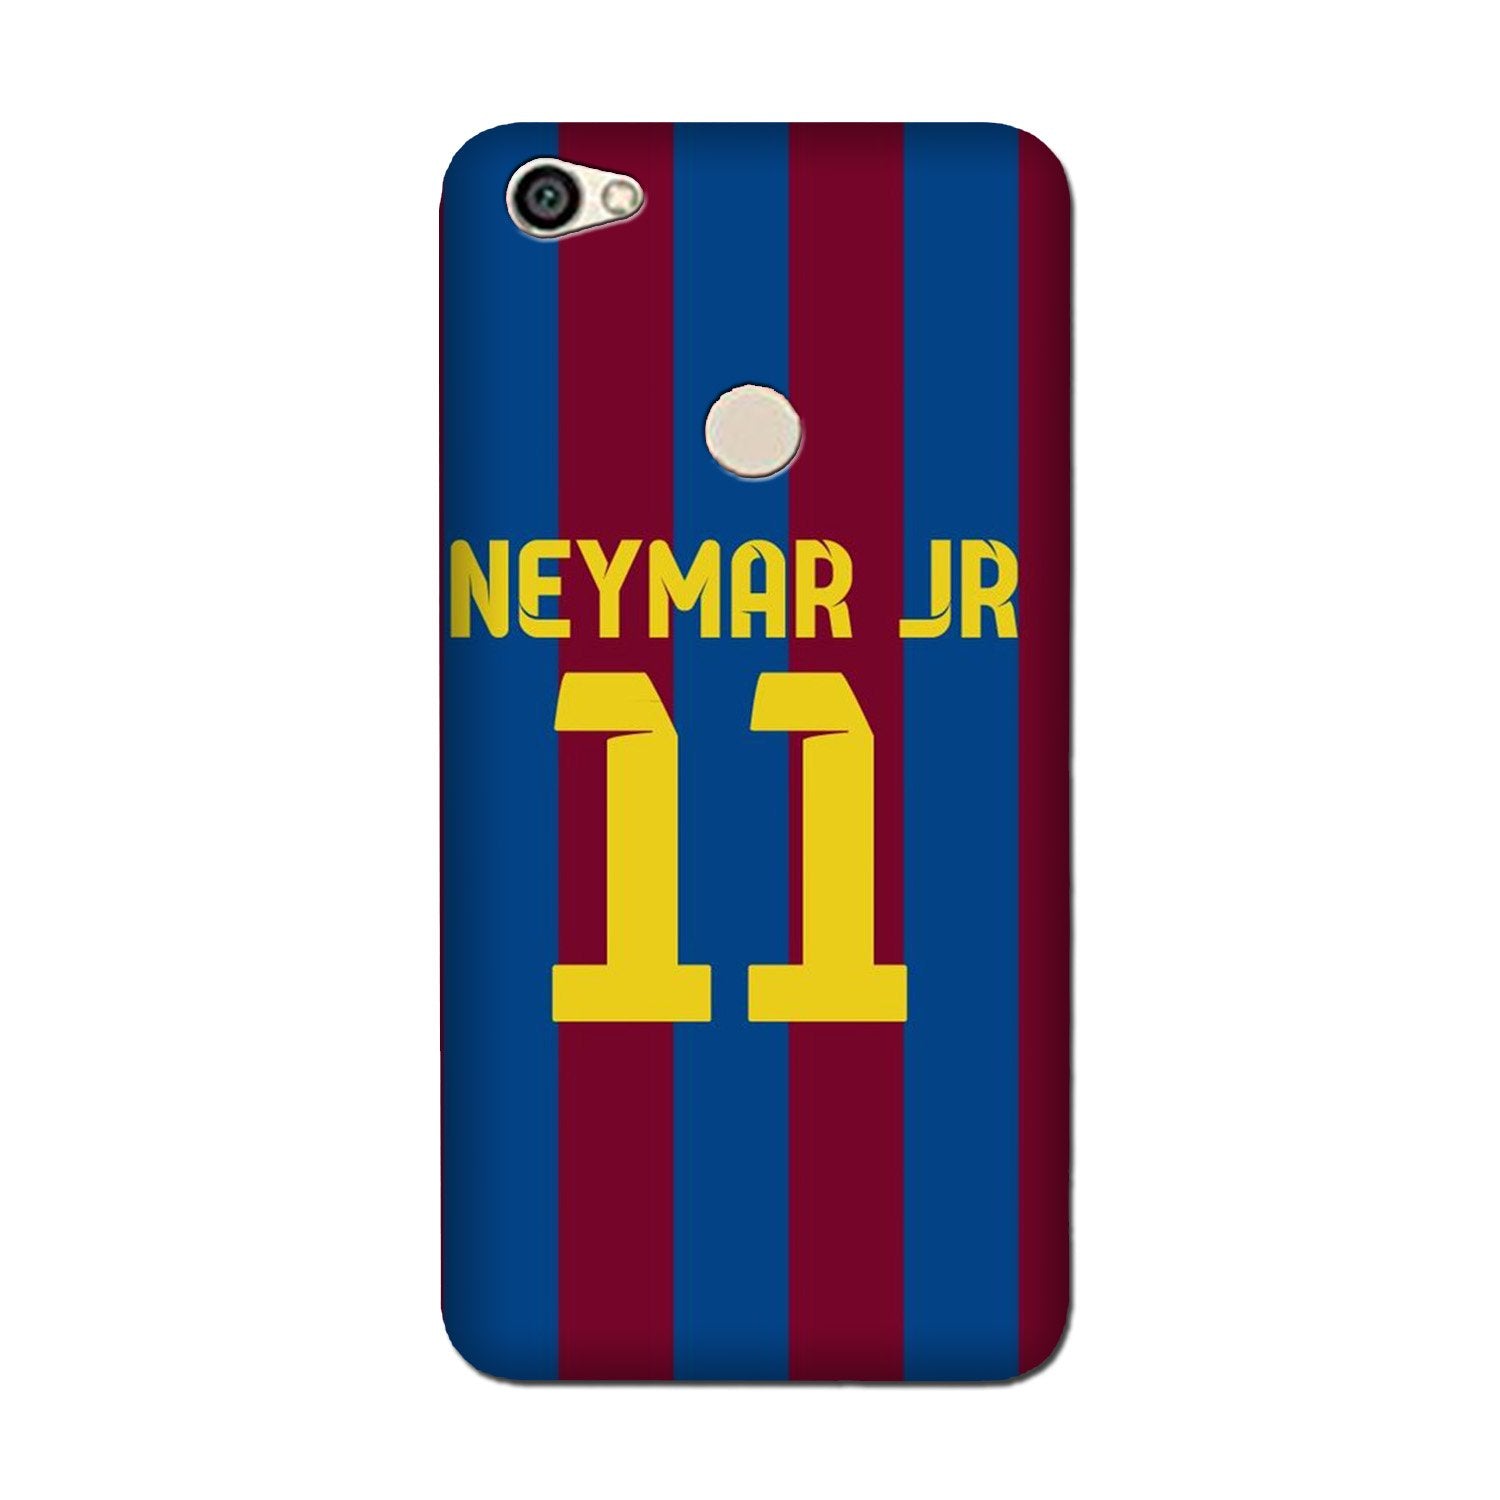 Neymar Jr Case for Vivo Y83/ Y81  (Design - 162)